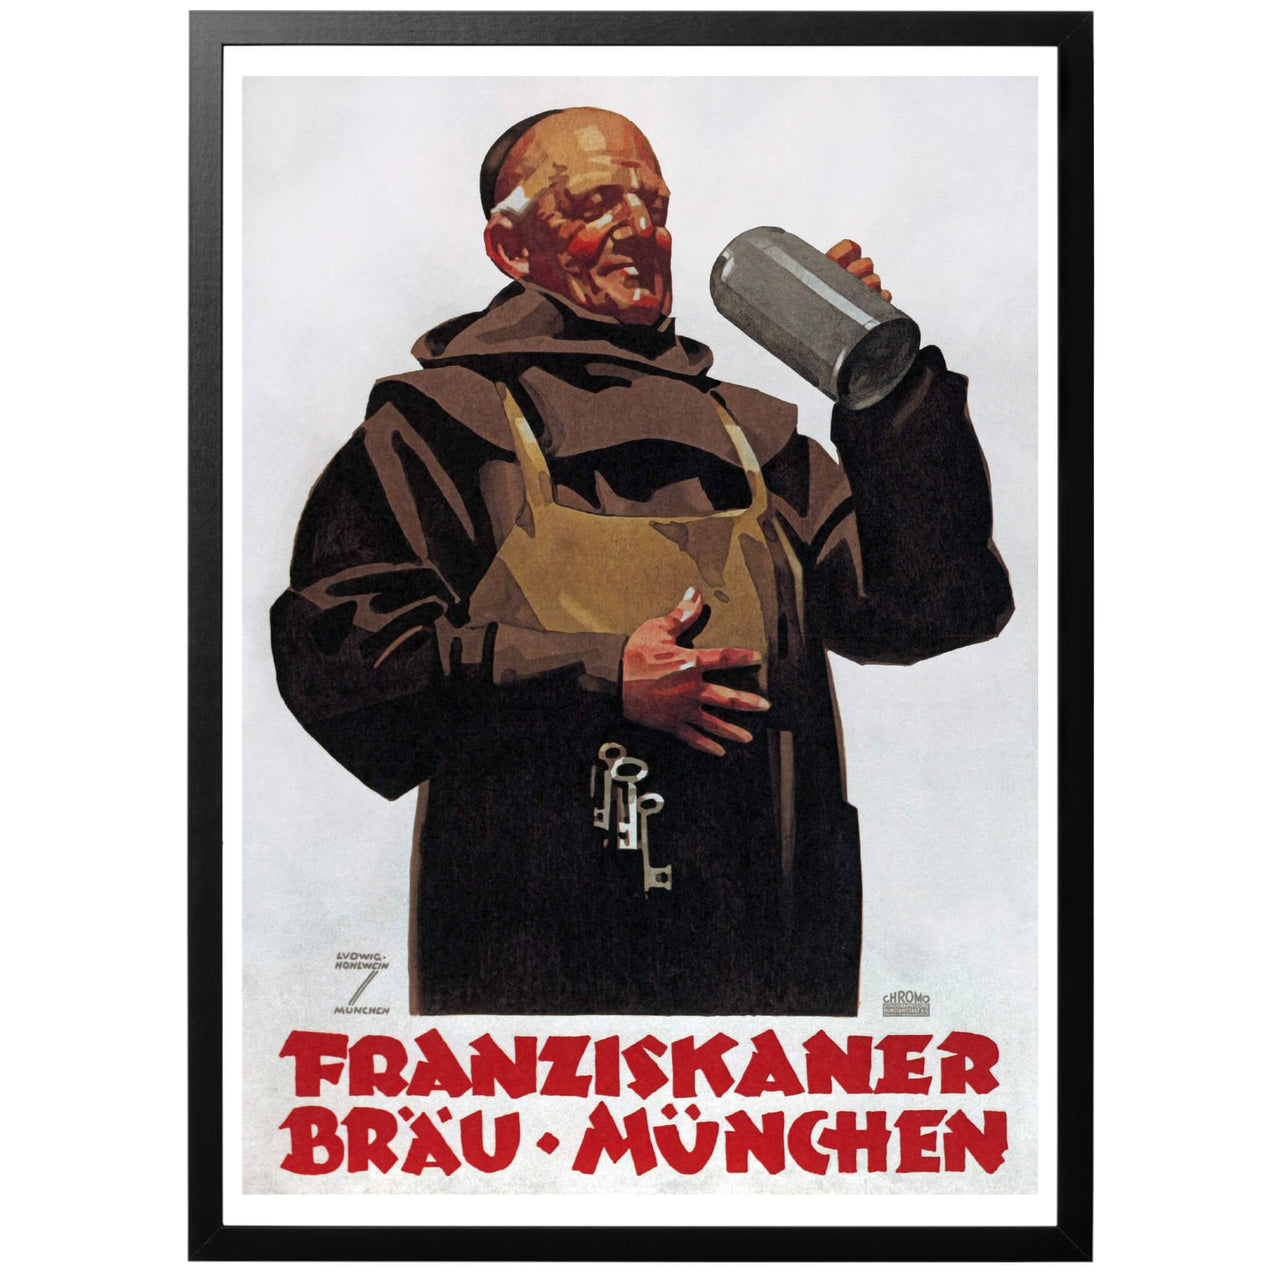 Franziskaner Bräu-München Tysk ölaffisch 1935. Konstnär Ludwig Hohlwein. Tysk vintage öl-poster, skapad av Ludwig Hohlwein, föreställande en munk av Franziskaner-ordern som håller sig för magen och dricker öl, bryggt av munkarna, så kallad klosteröl.  Köp postern hos oss!